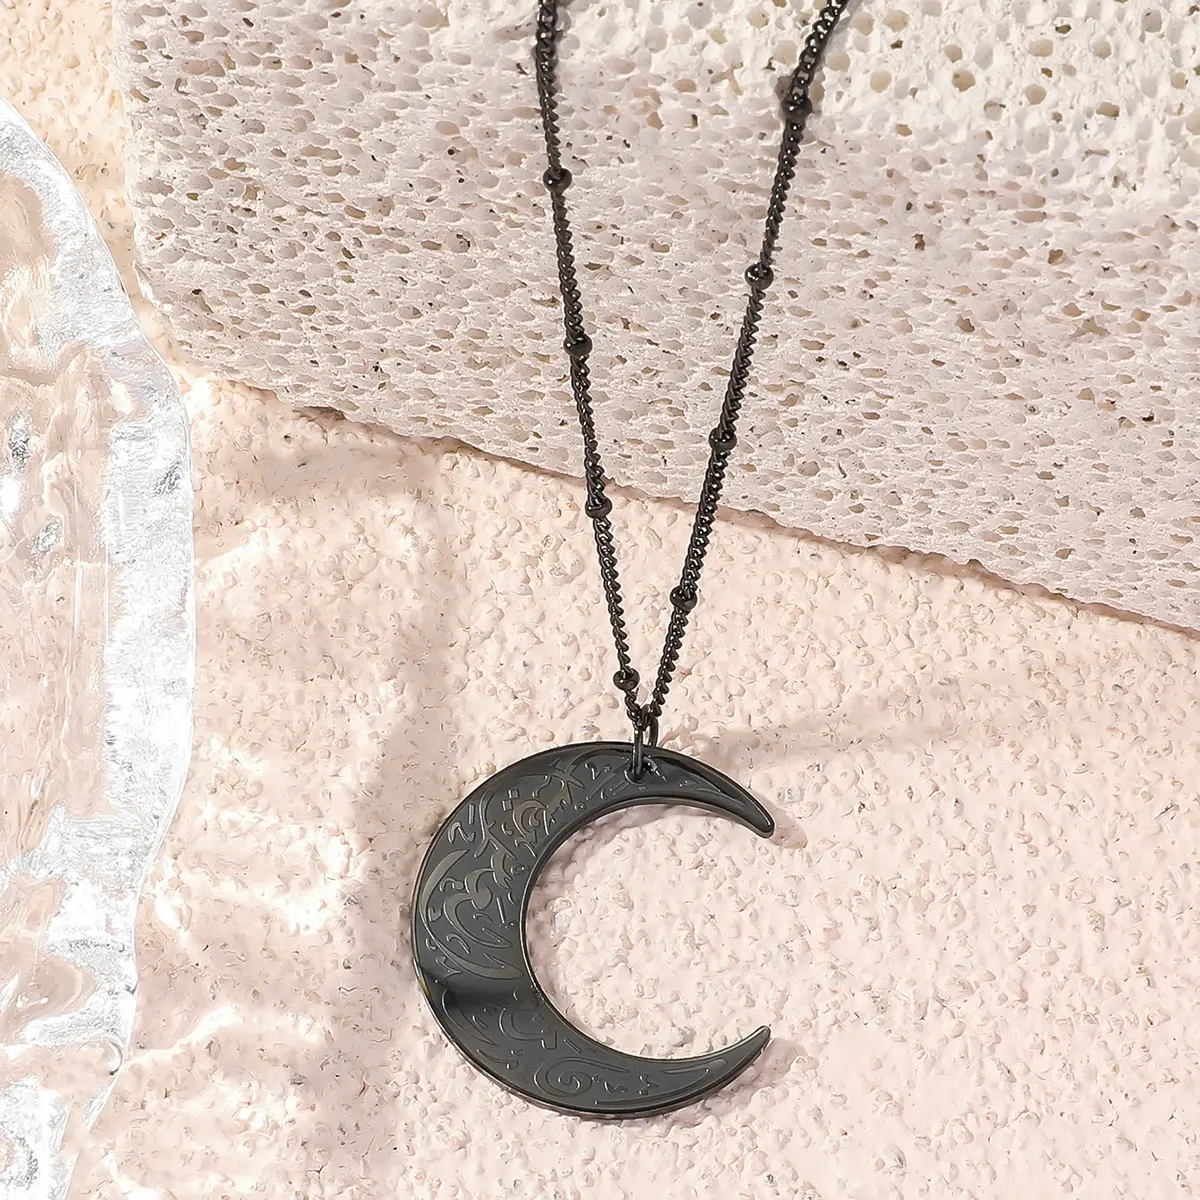 Edelstahl Wahrlich mit Härten Mondhalbmond muslimisch islamischer Ayatul Kursi arabischer Koran-Verse Geduld-Halsband 18K Gold